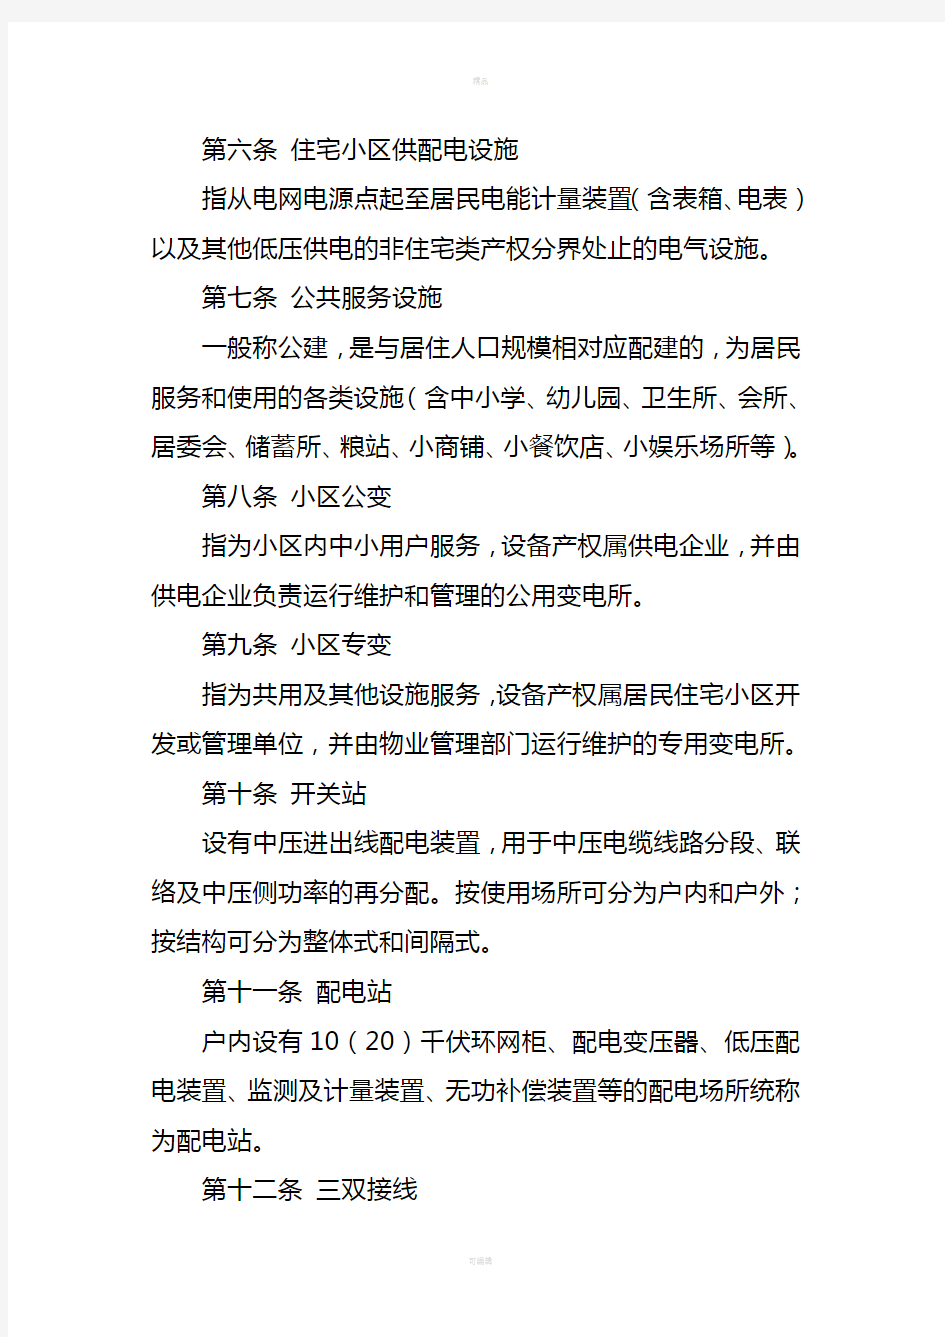 国网浙江省电力公司住宅工程配电设计技术规定(试行)